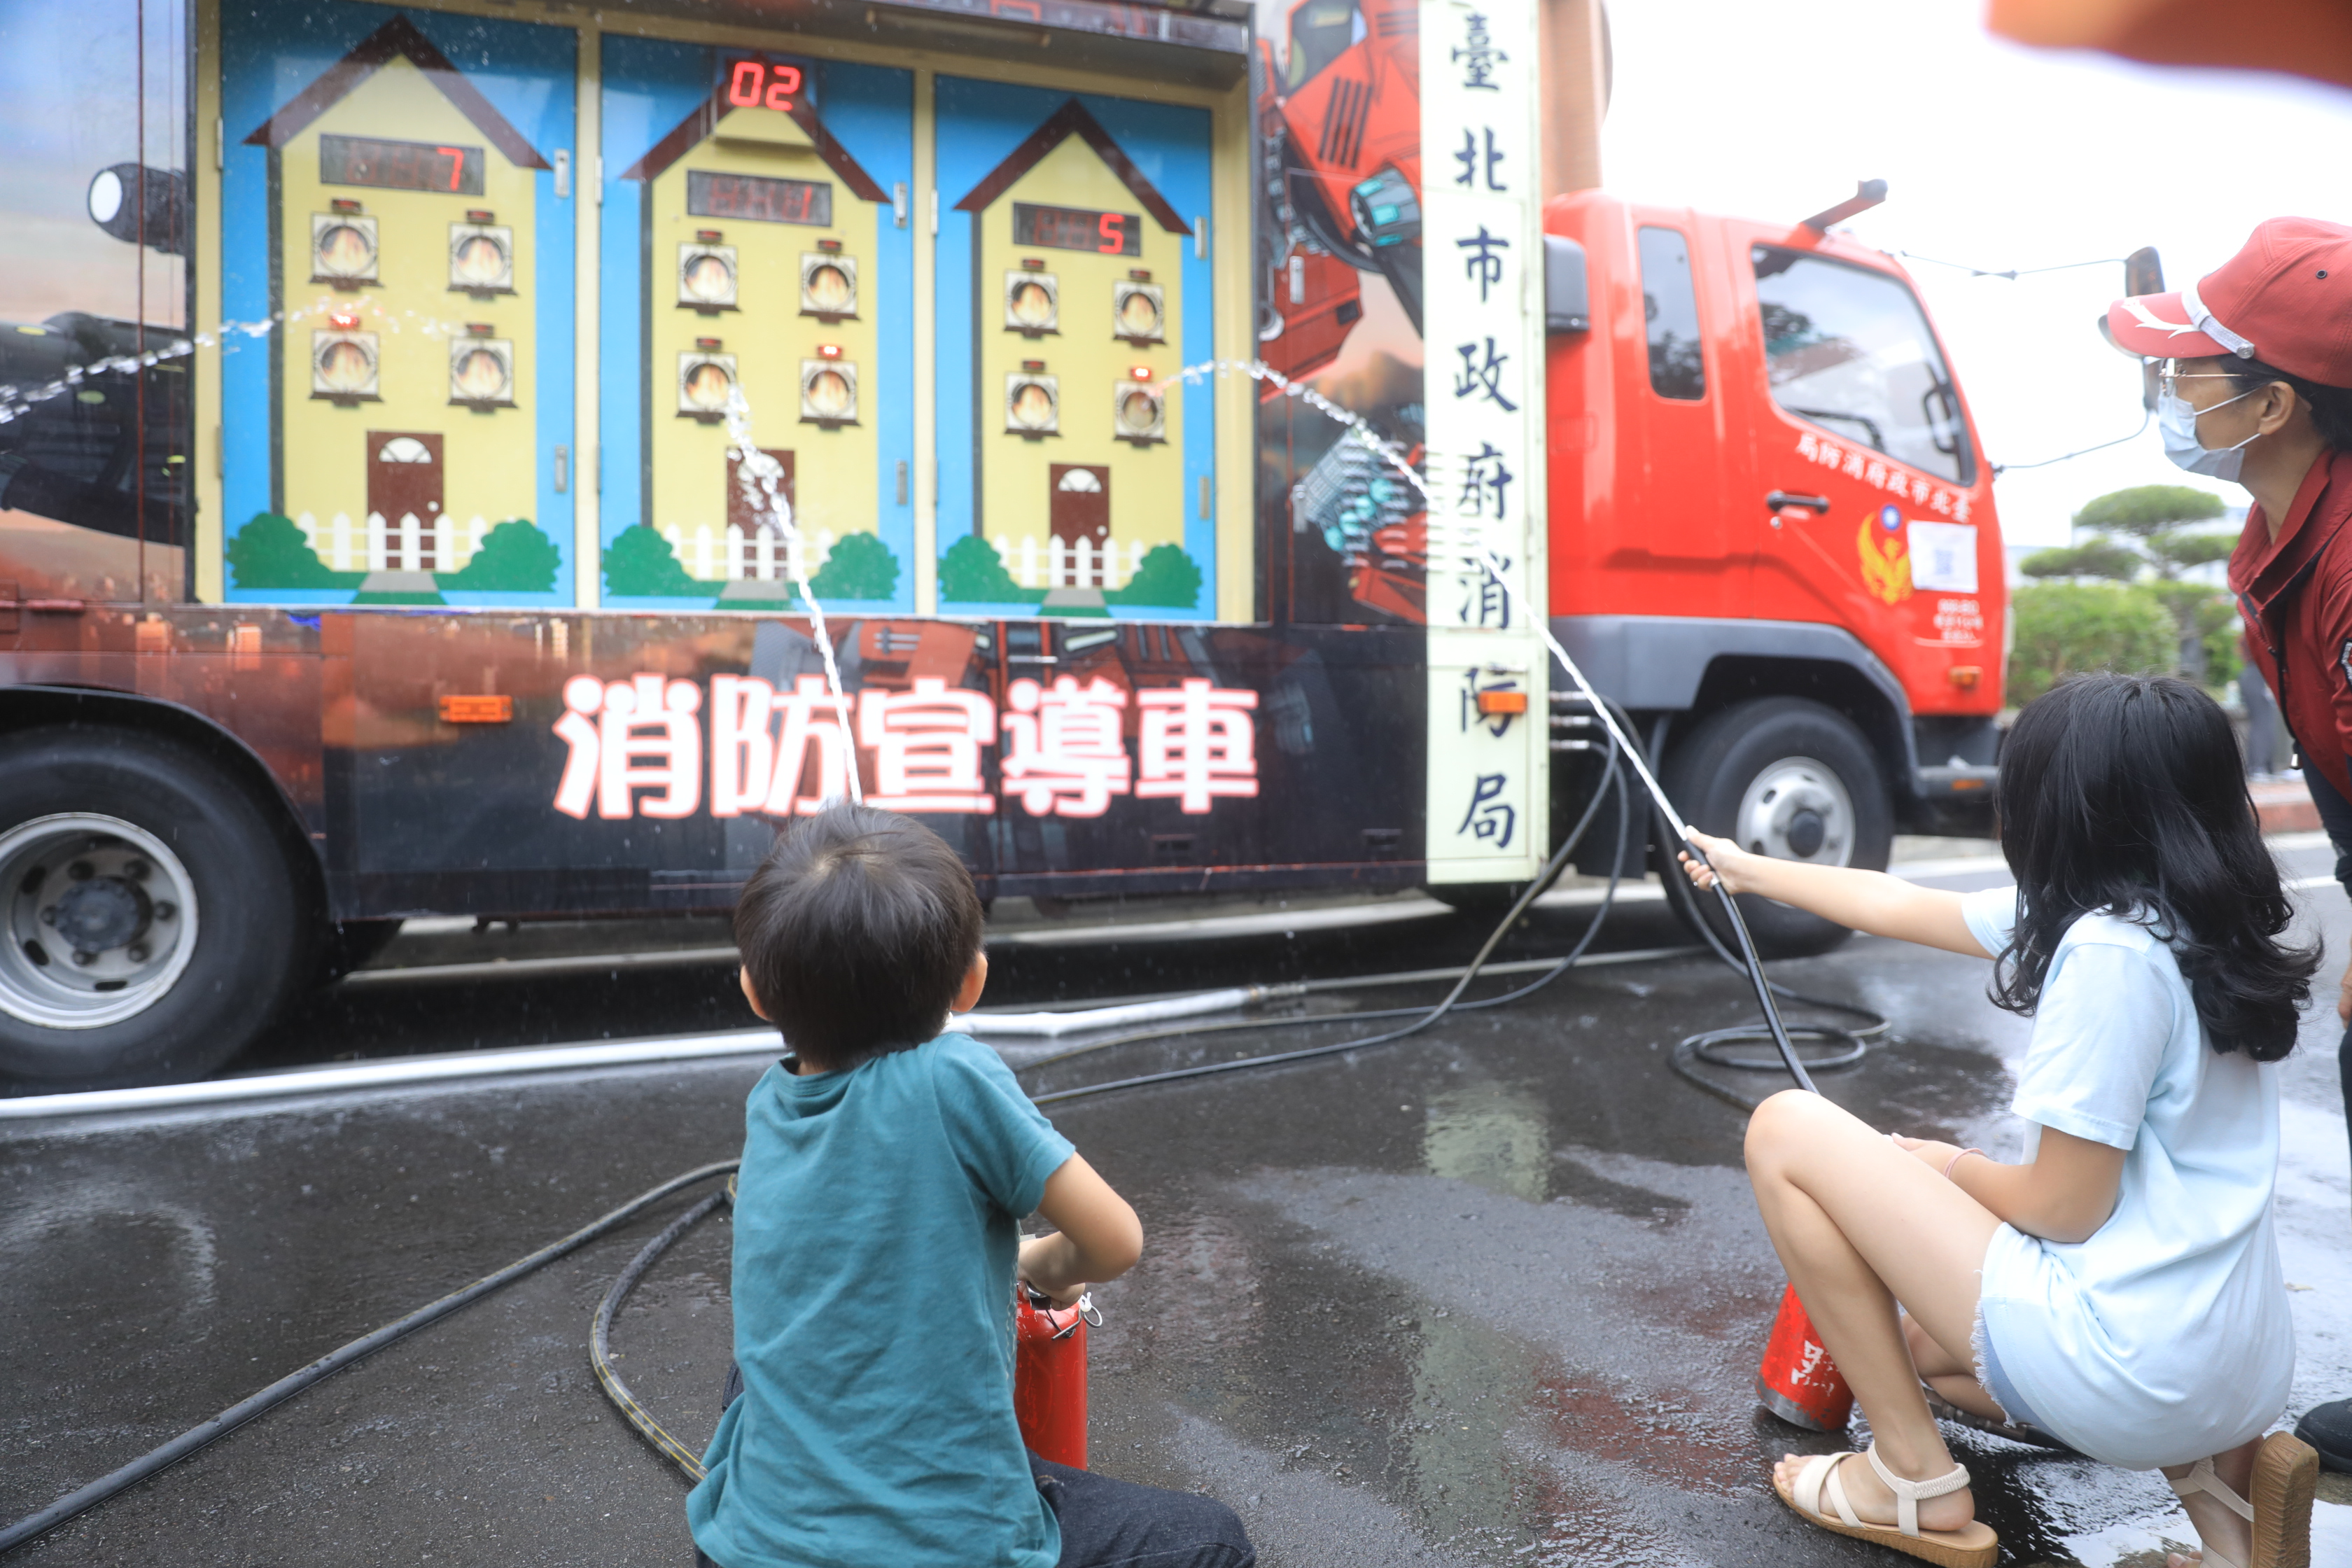 臺北市政府消防局出動消防灑水車推廣防災觀念。